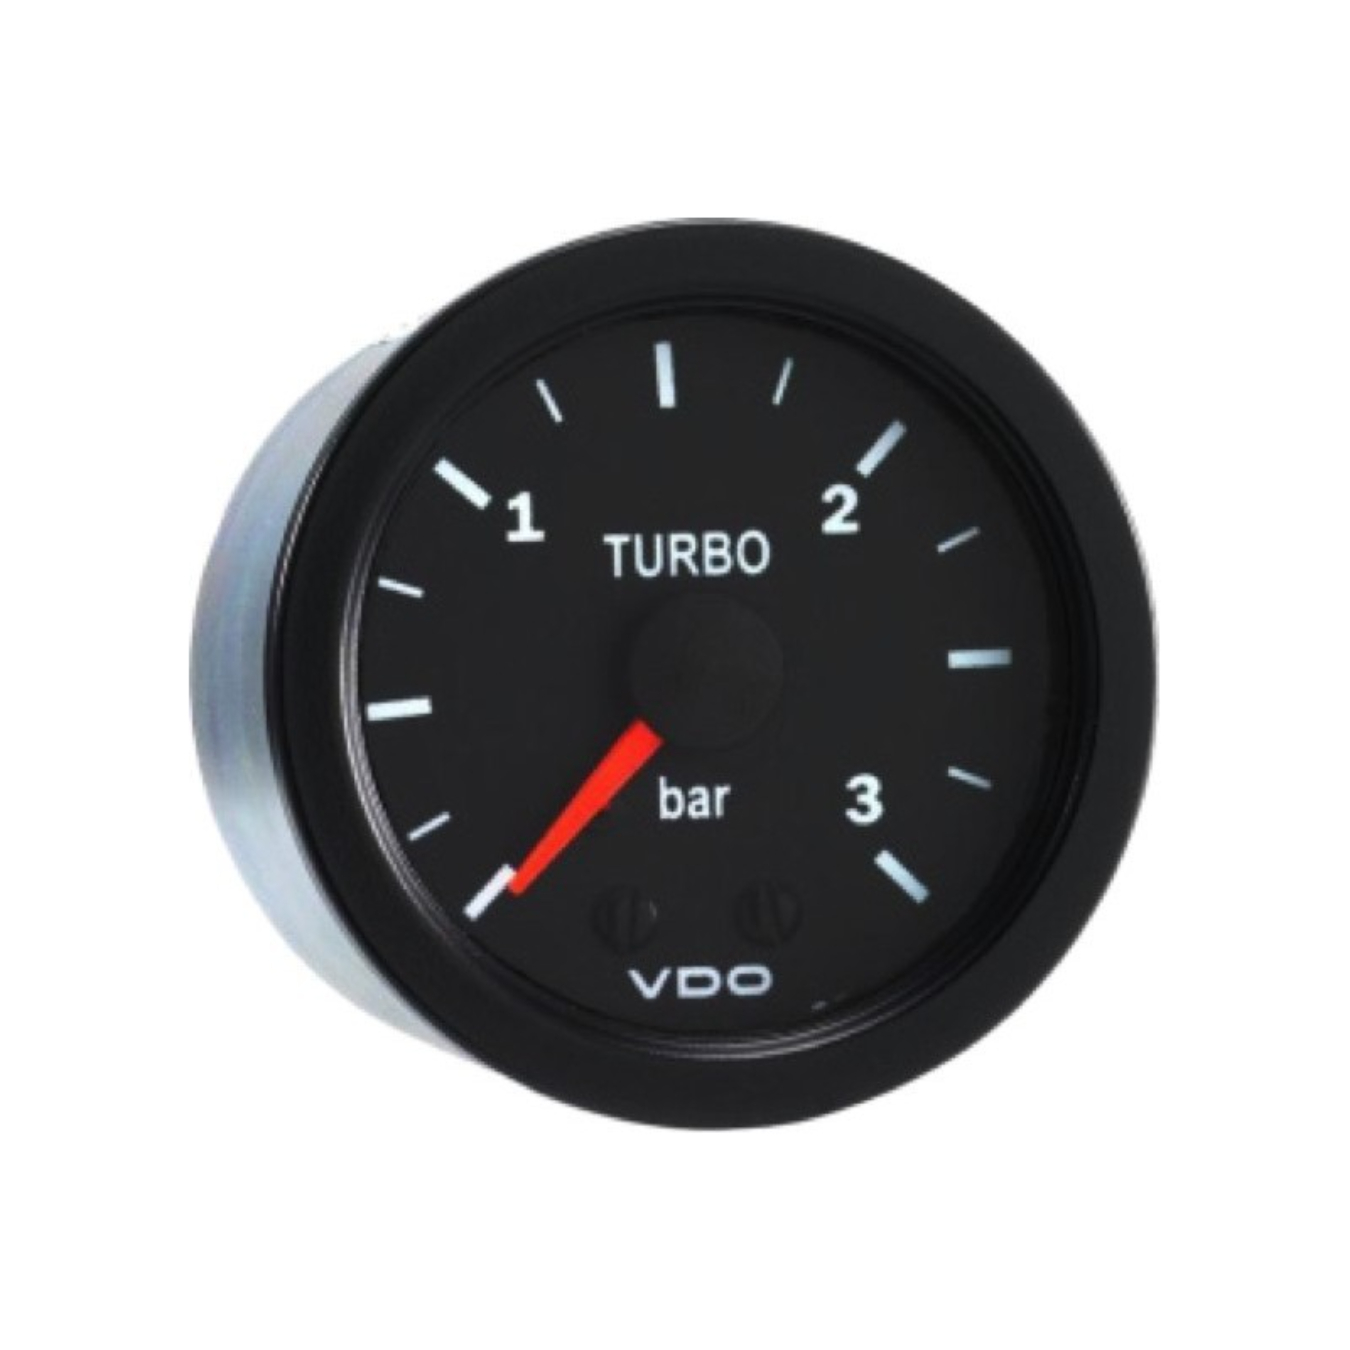 Manomètre turbo mécanique 0-3 bar Prosport – Rdy shop service